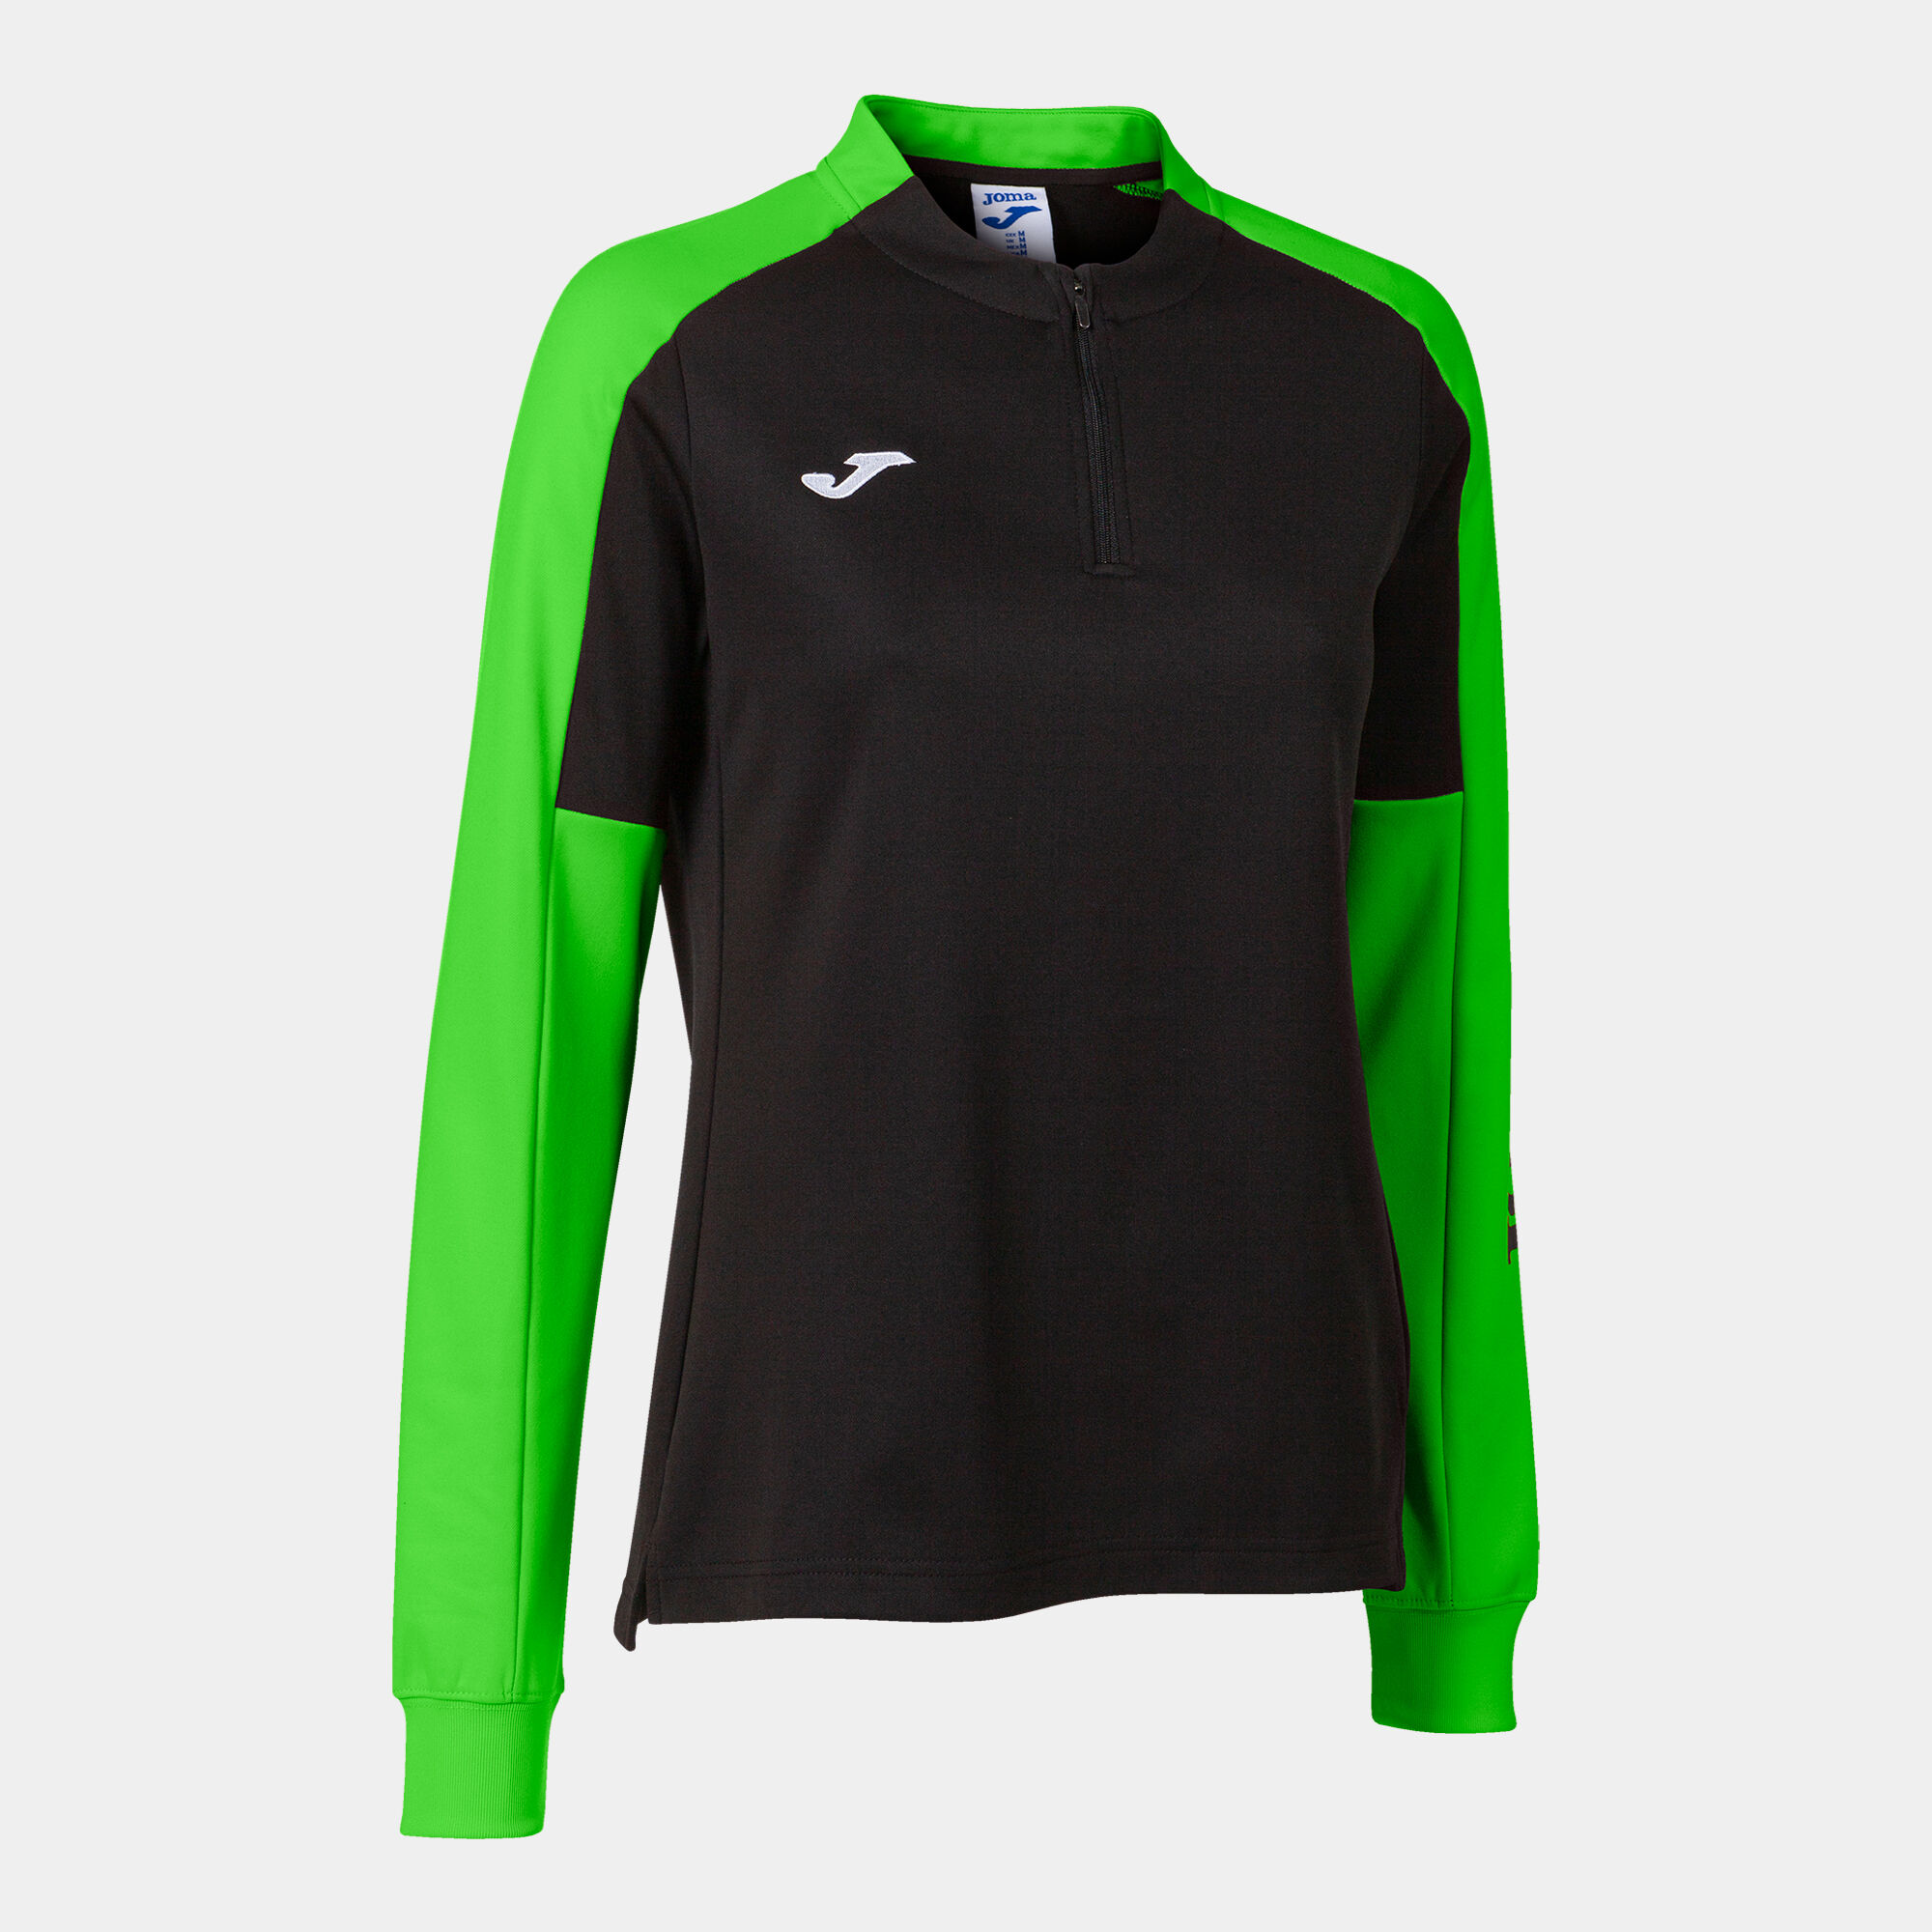 Sweat-shirt femme Eco Championship noir vert fluo